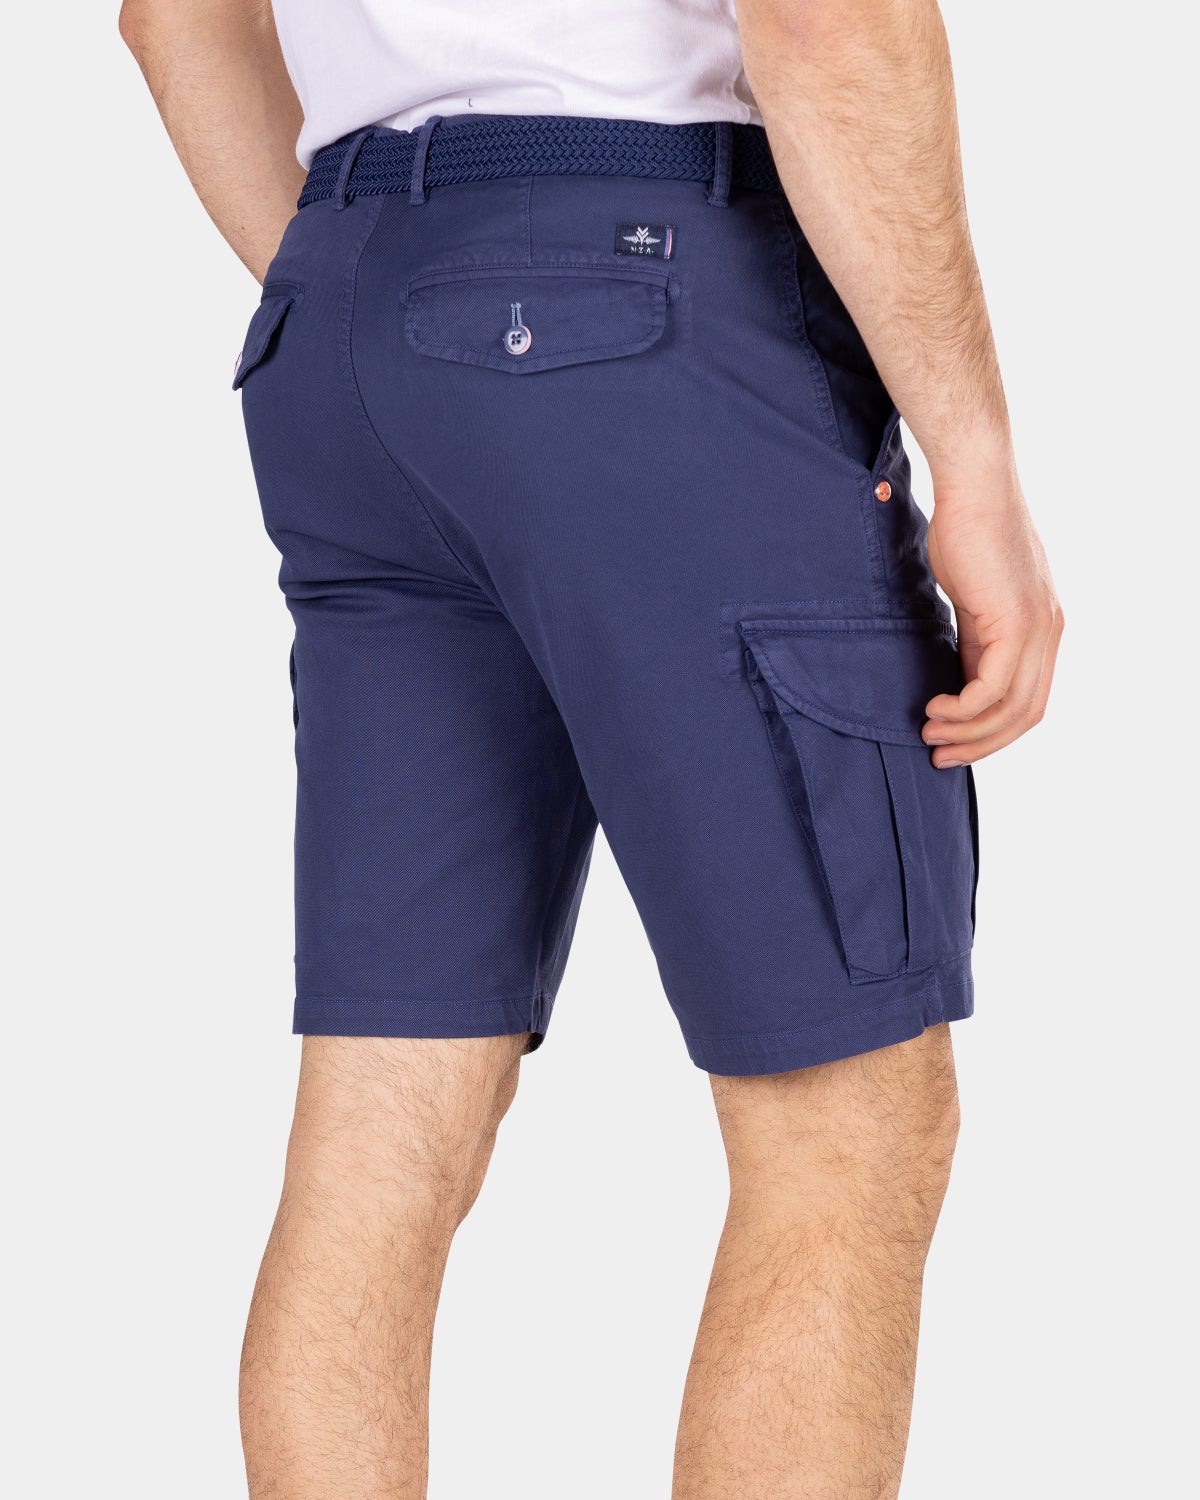 Plain shorts - Dusk Navy